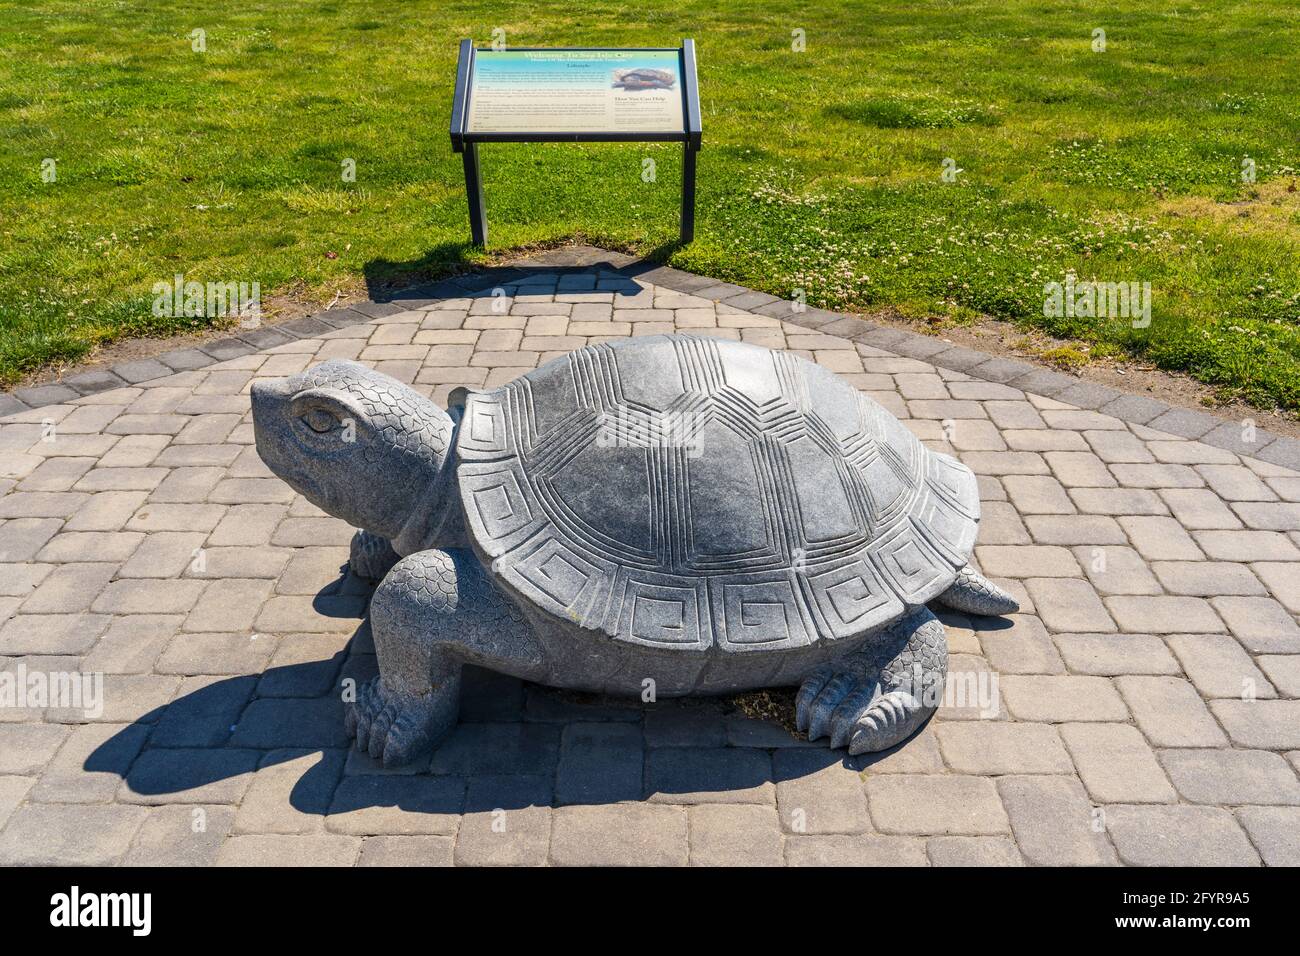 Sea Isle City, NJ - 13 de mayo de 2021: Gran terrapin de piedra tallada diamondback con un cartel de la Comisión Ambiental de Sea Isle City que habla sobre turt Foto de stock